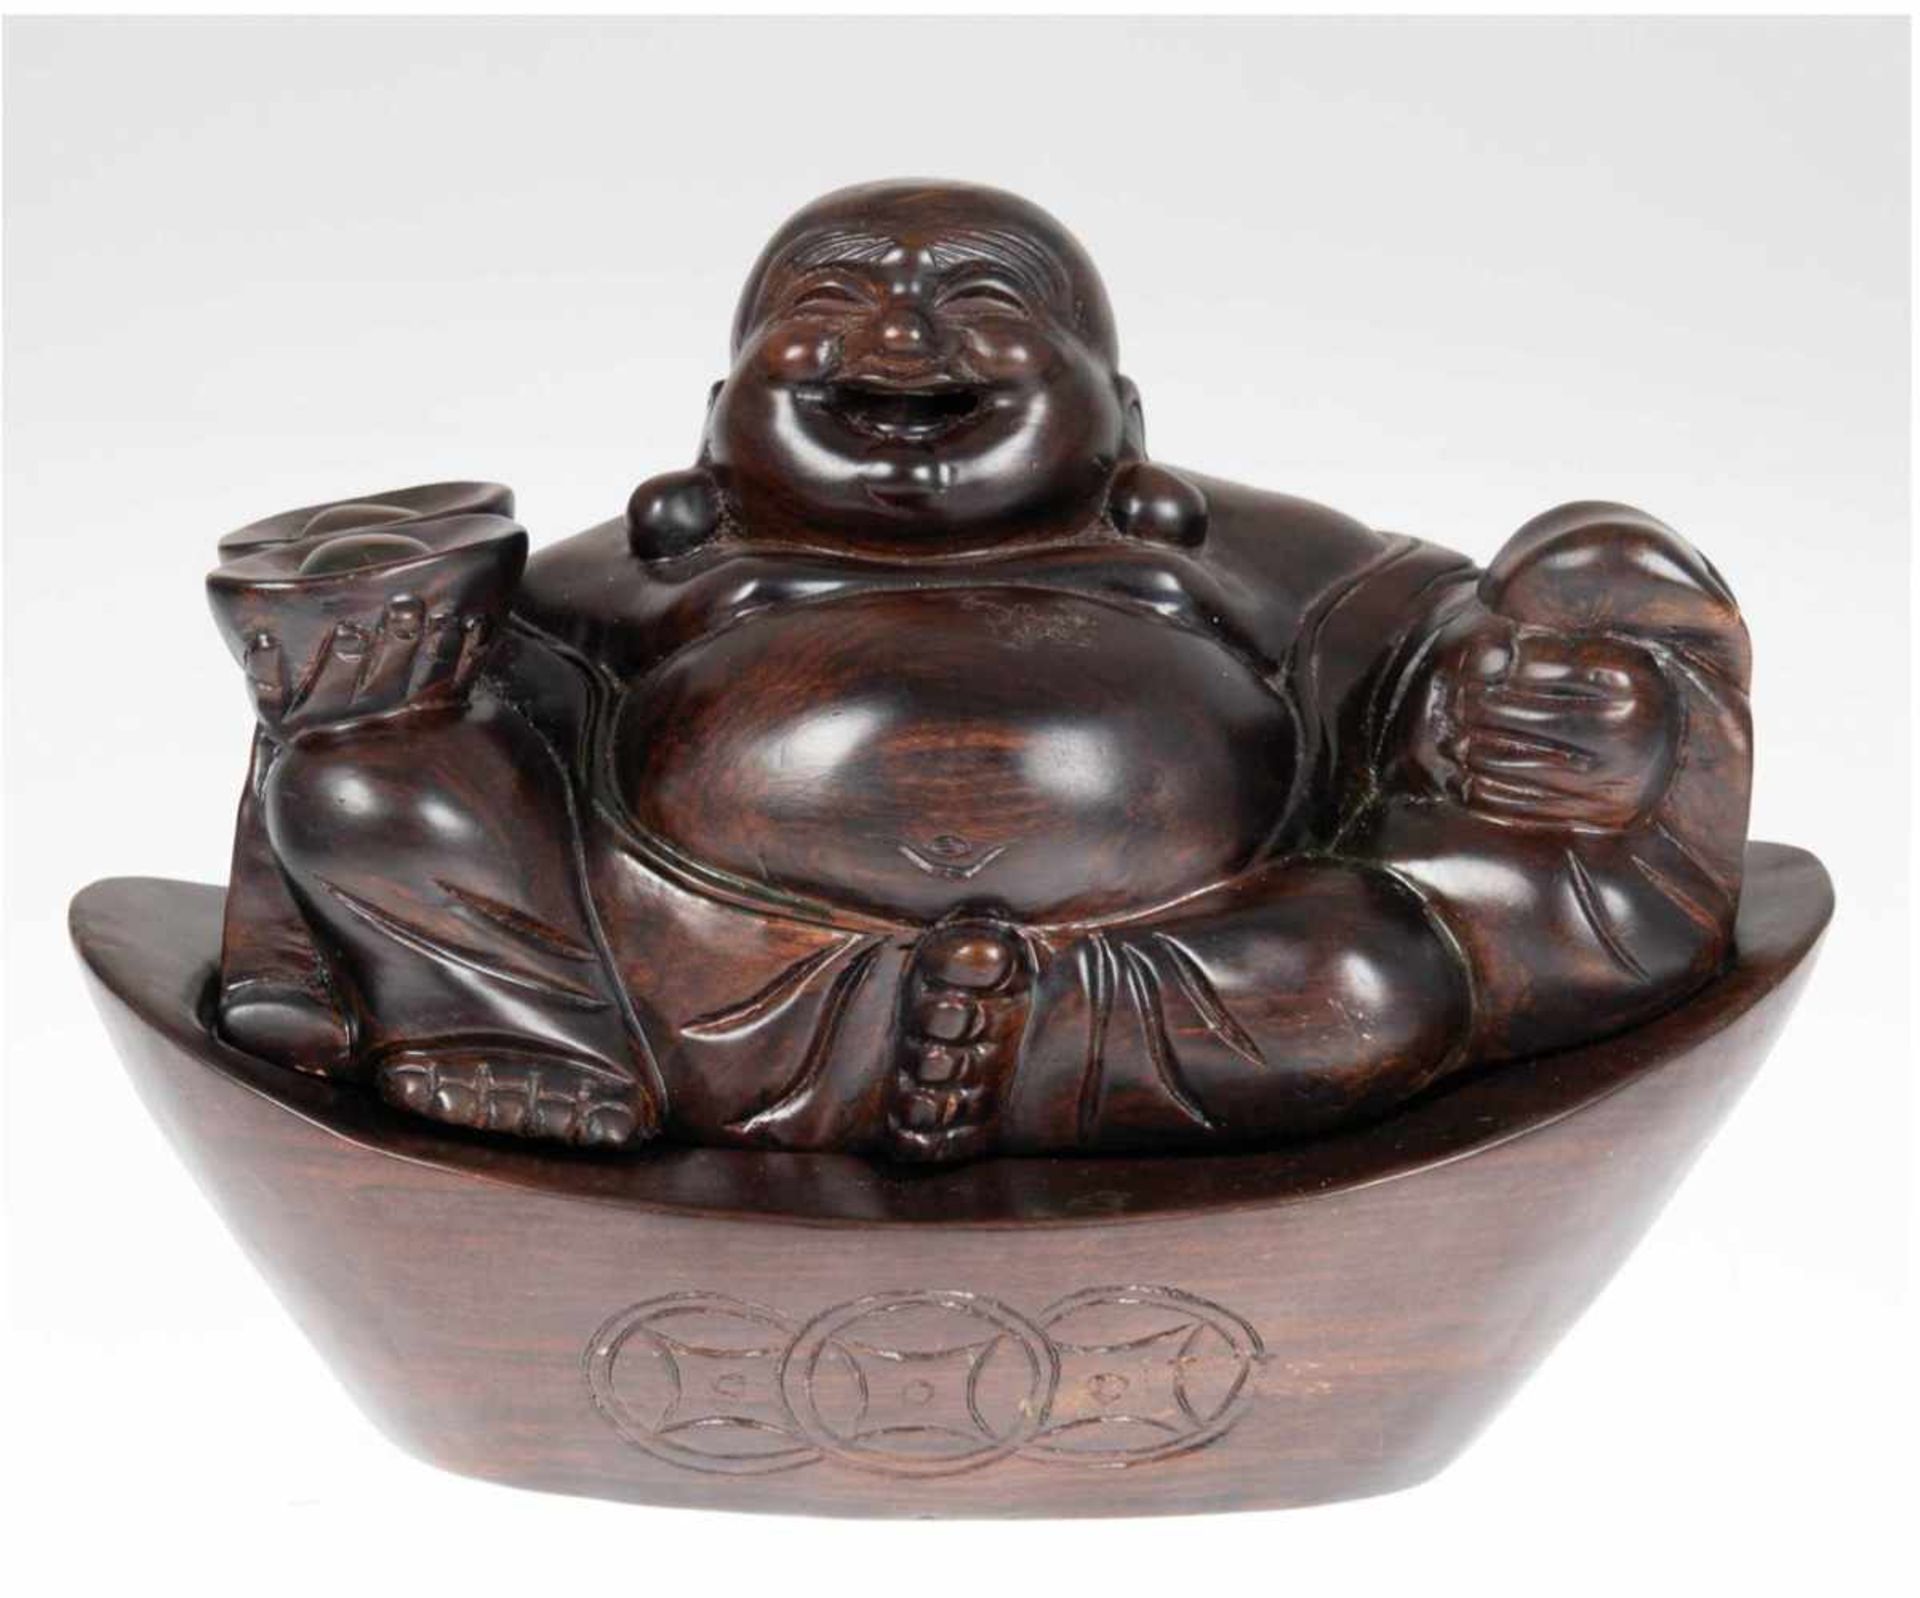 "Buddha", Räucherfigur, Holz geschnitzt, innen hohl, auf schiffchenförmigem passigemSockel, Ges.-